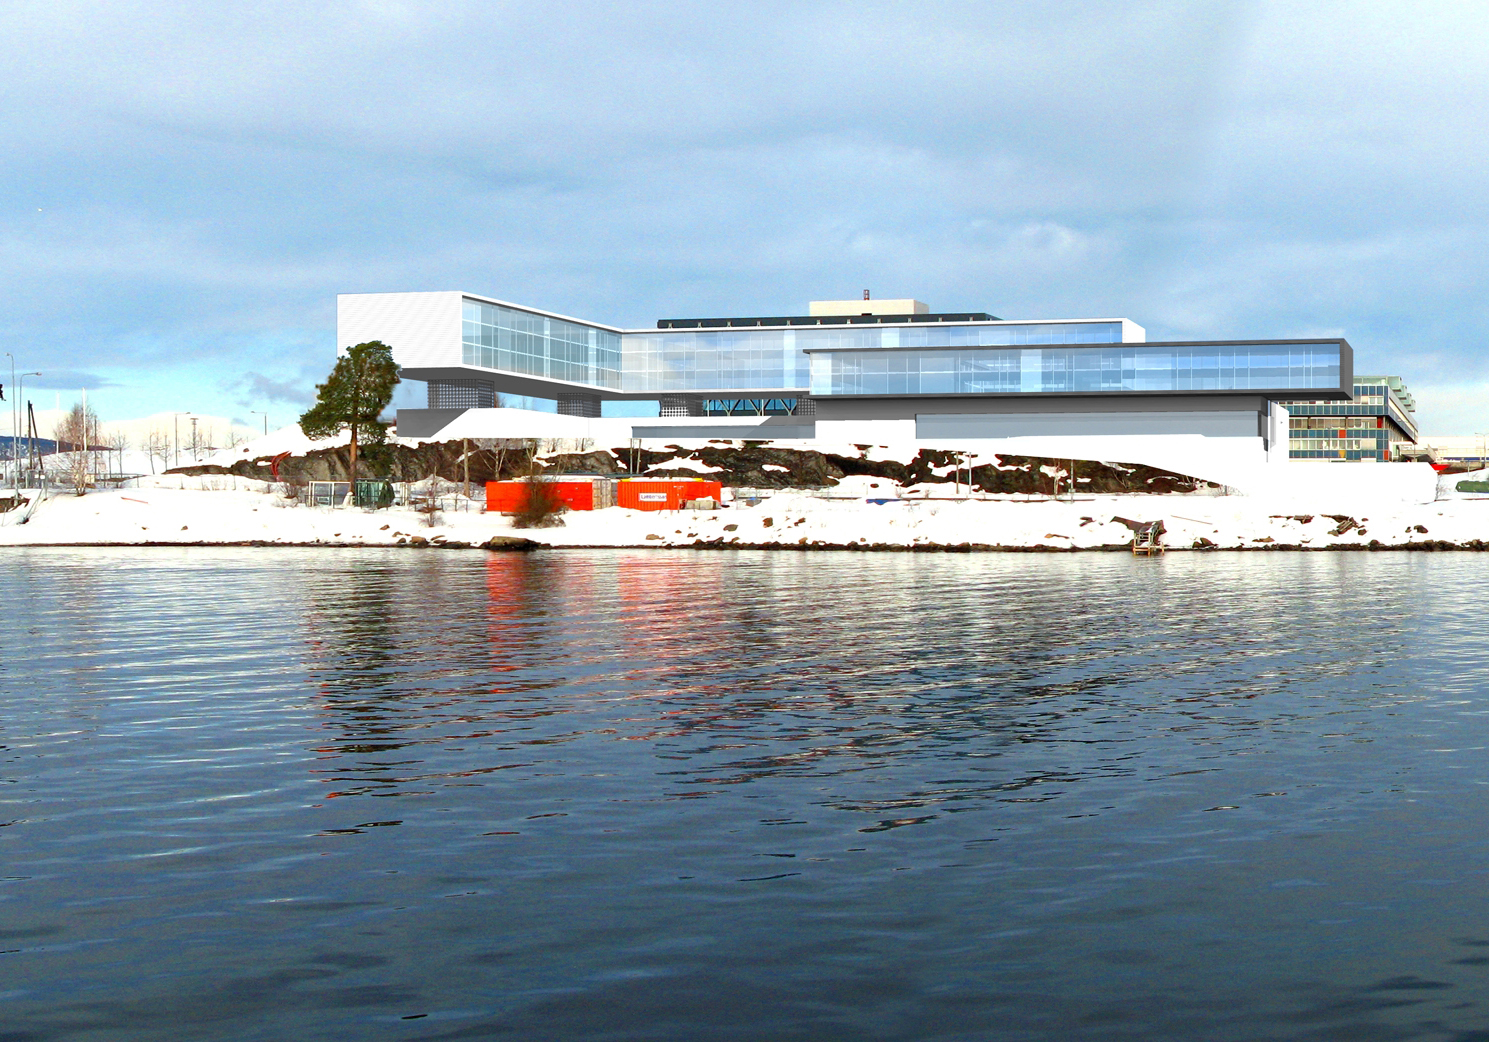 Scandic utökar med ytterligare ett hotell i Oslo